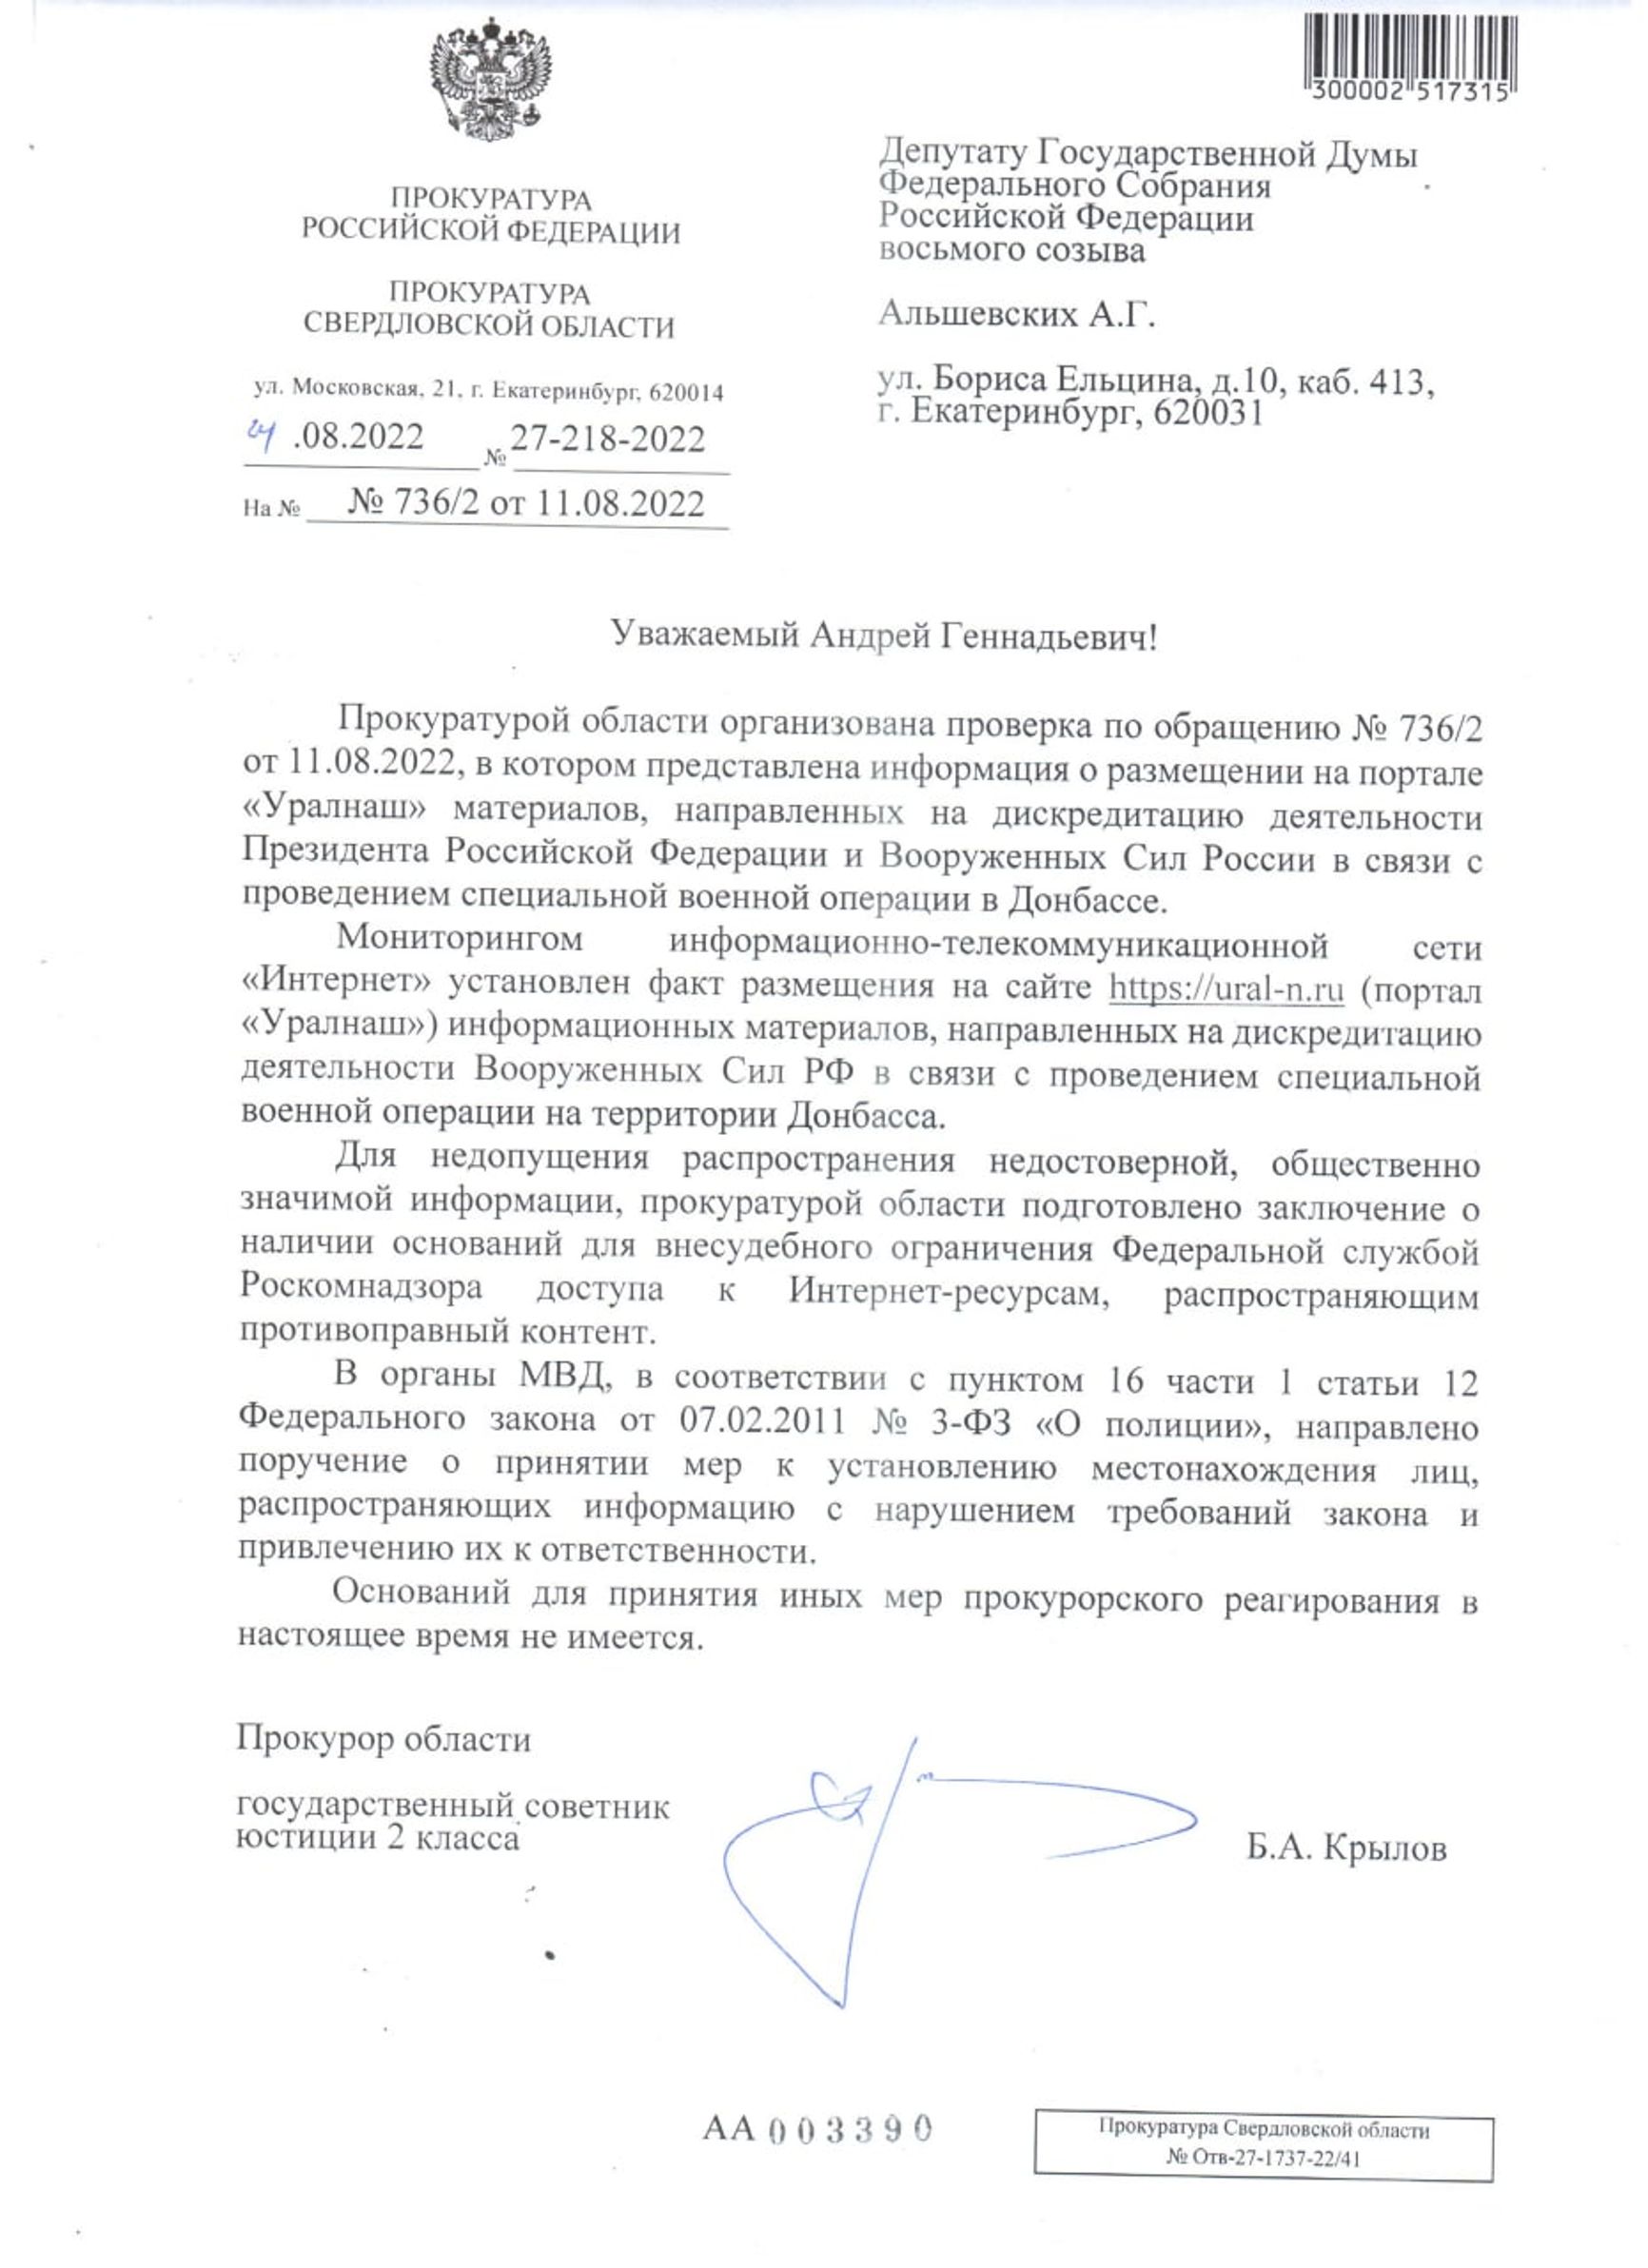 Сайт портала о Екатеринбурге «Уралнаш» заблокируют из-за доноса депутата Госдумы